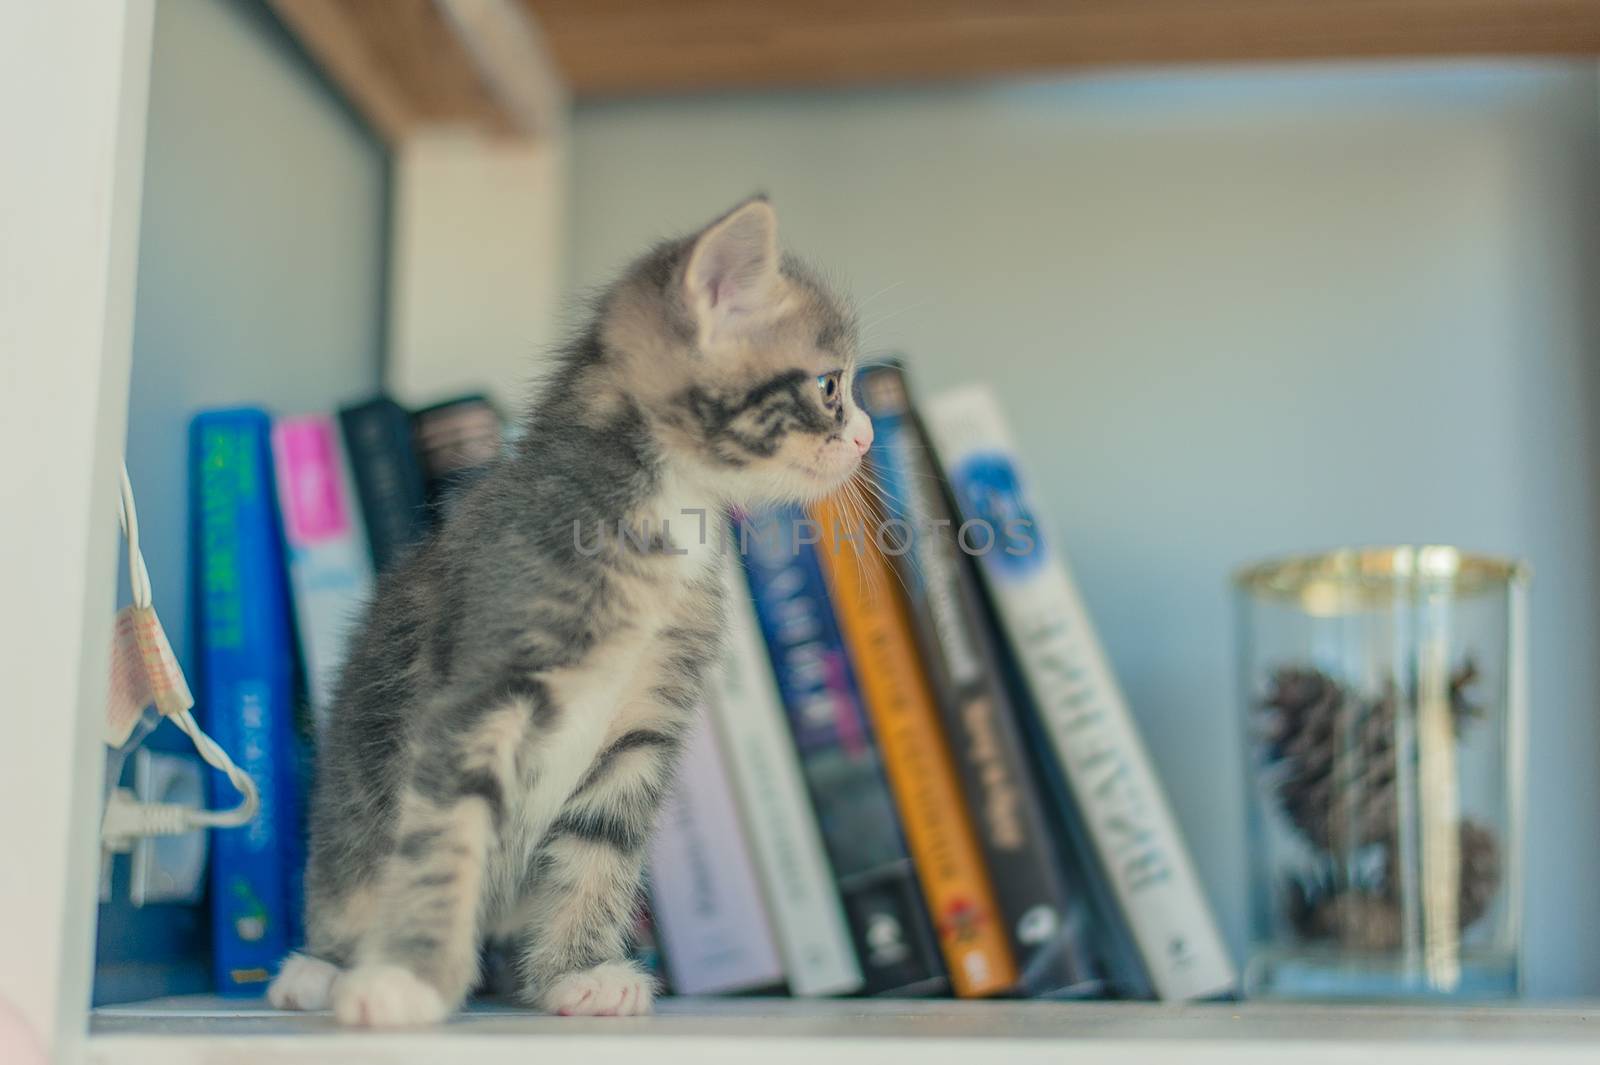 Gray kitten sits on shelves near books.